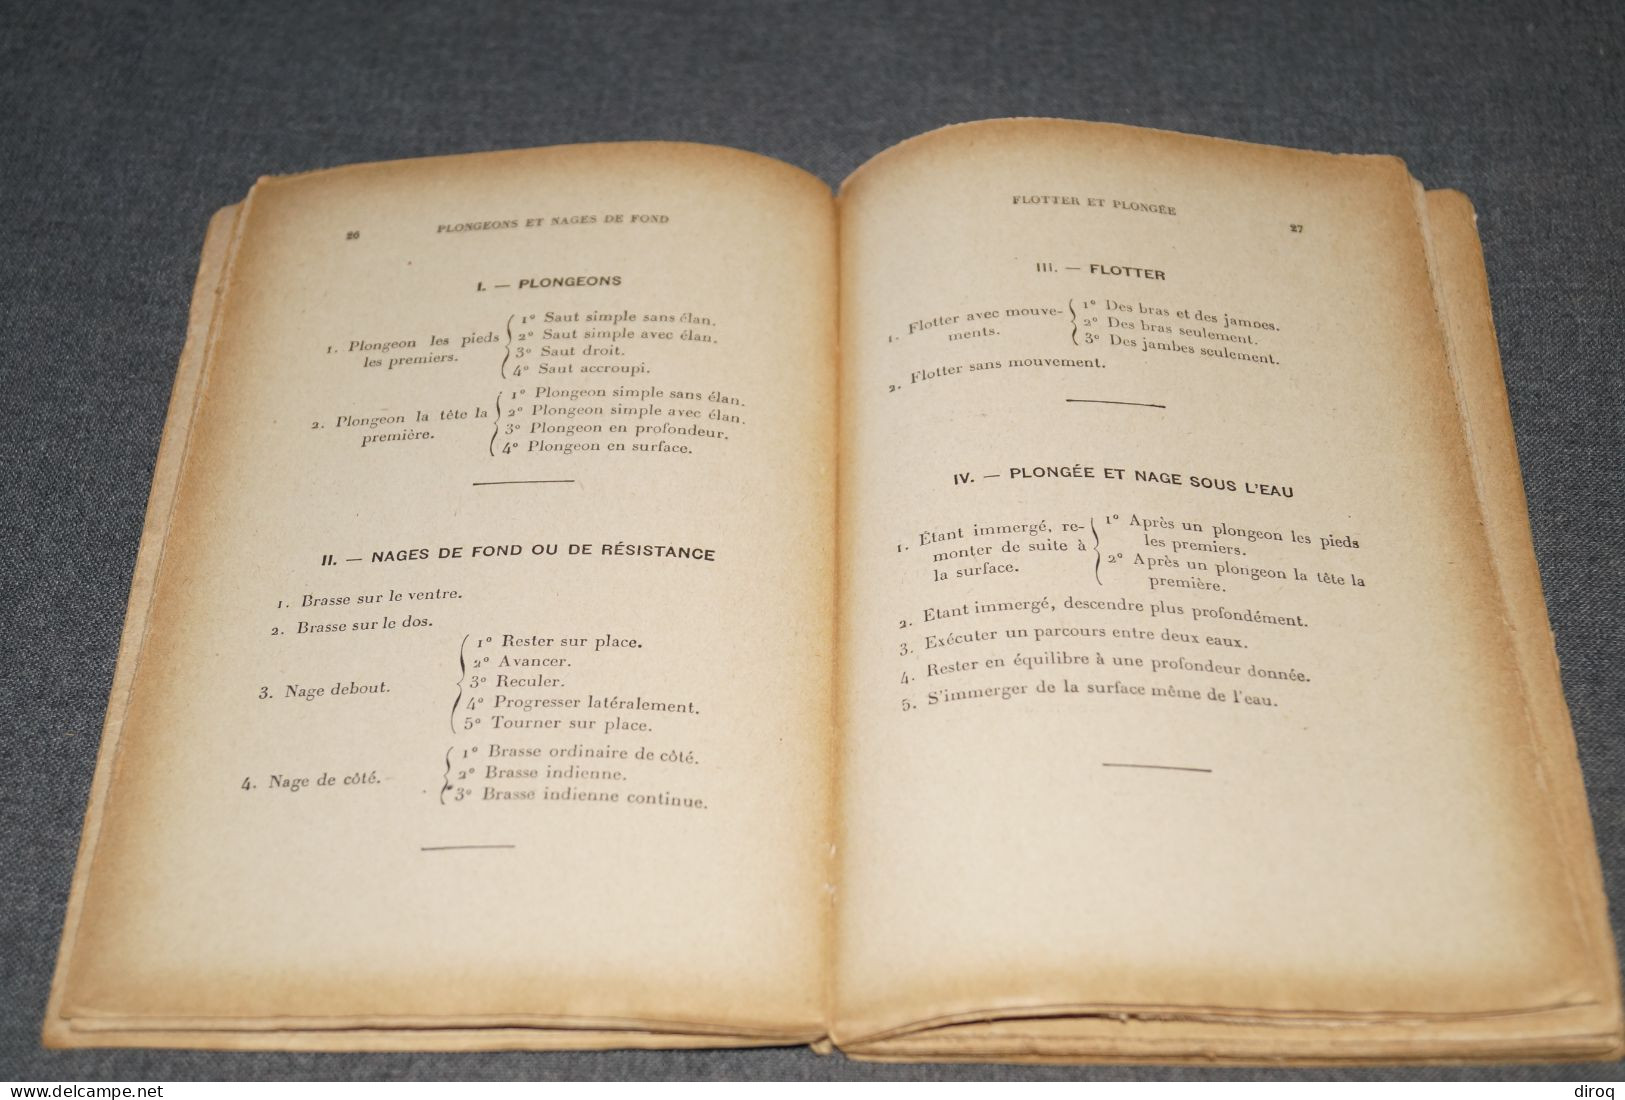 Natation,1933,Leçon type,G.Hébert,154 pages,ancien,complet,19 Cm. sur 12 Cm.